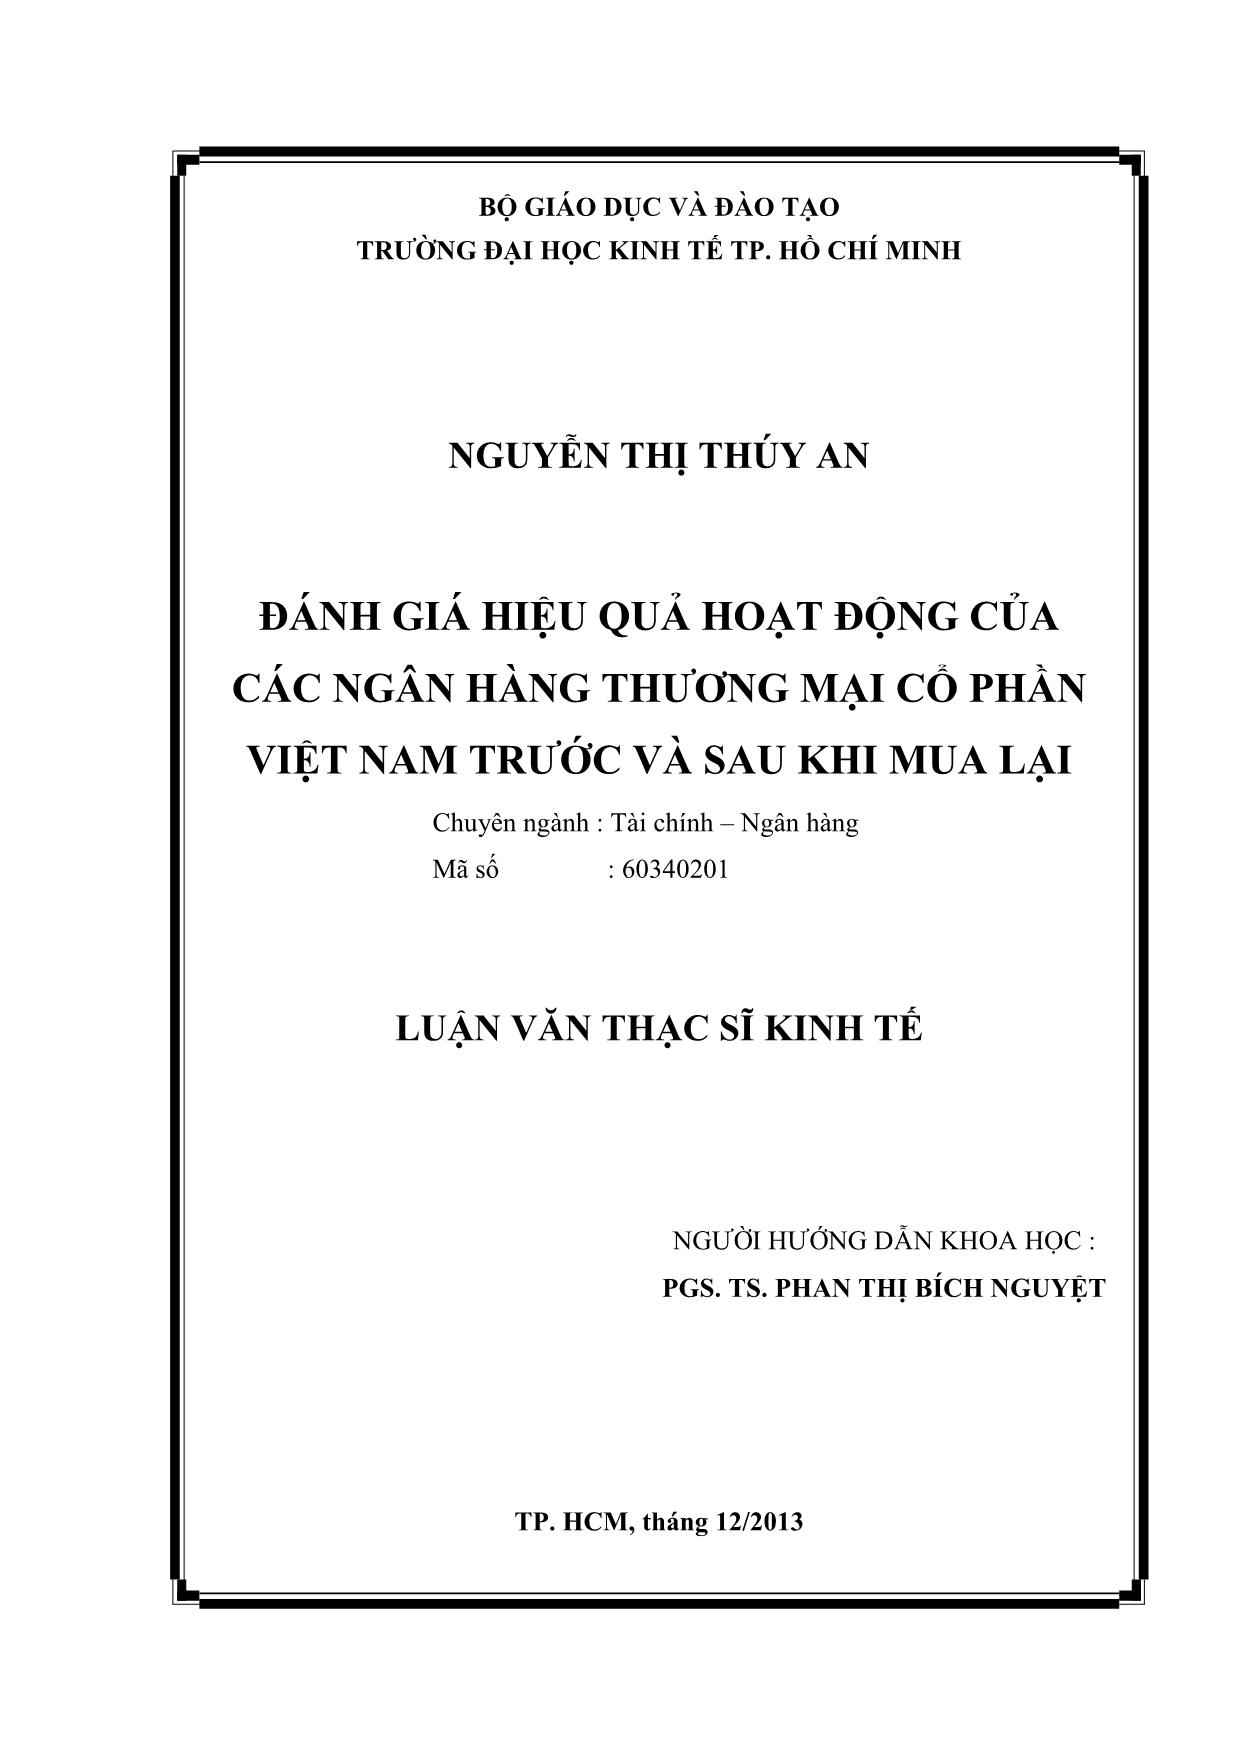 Đánh giá hiệu quả hoạt động của các ngân hàng thương mại cổ phần Việt Nam trước và sau khi mua lại trang 2